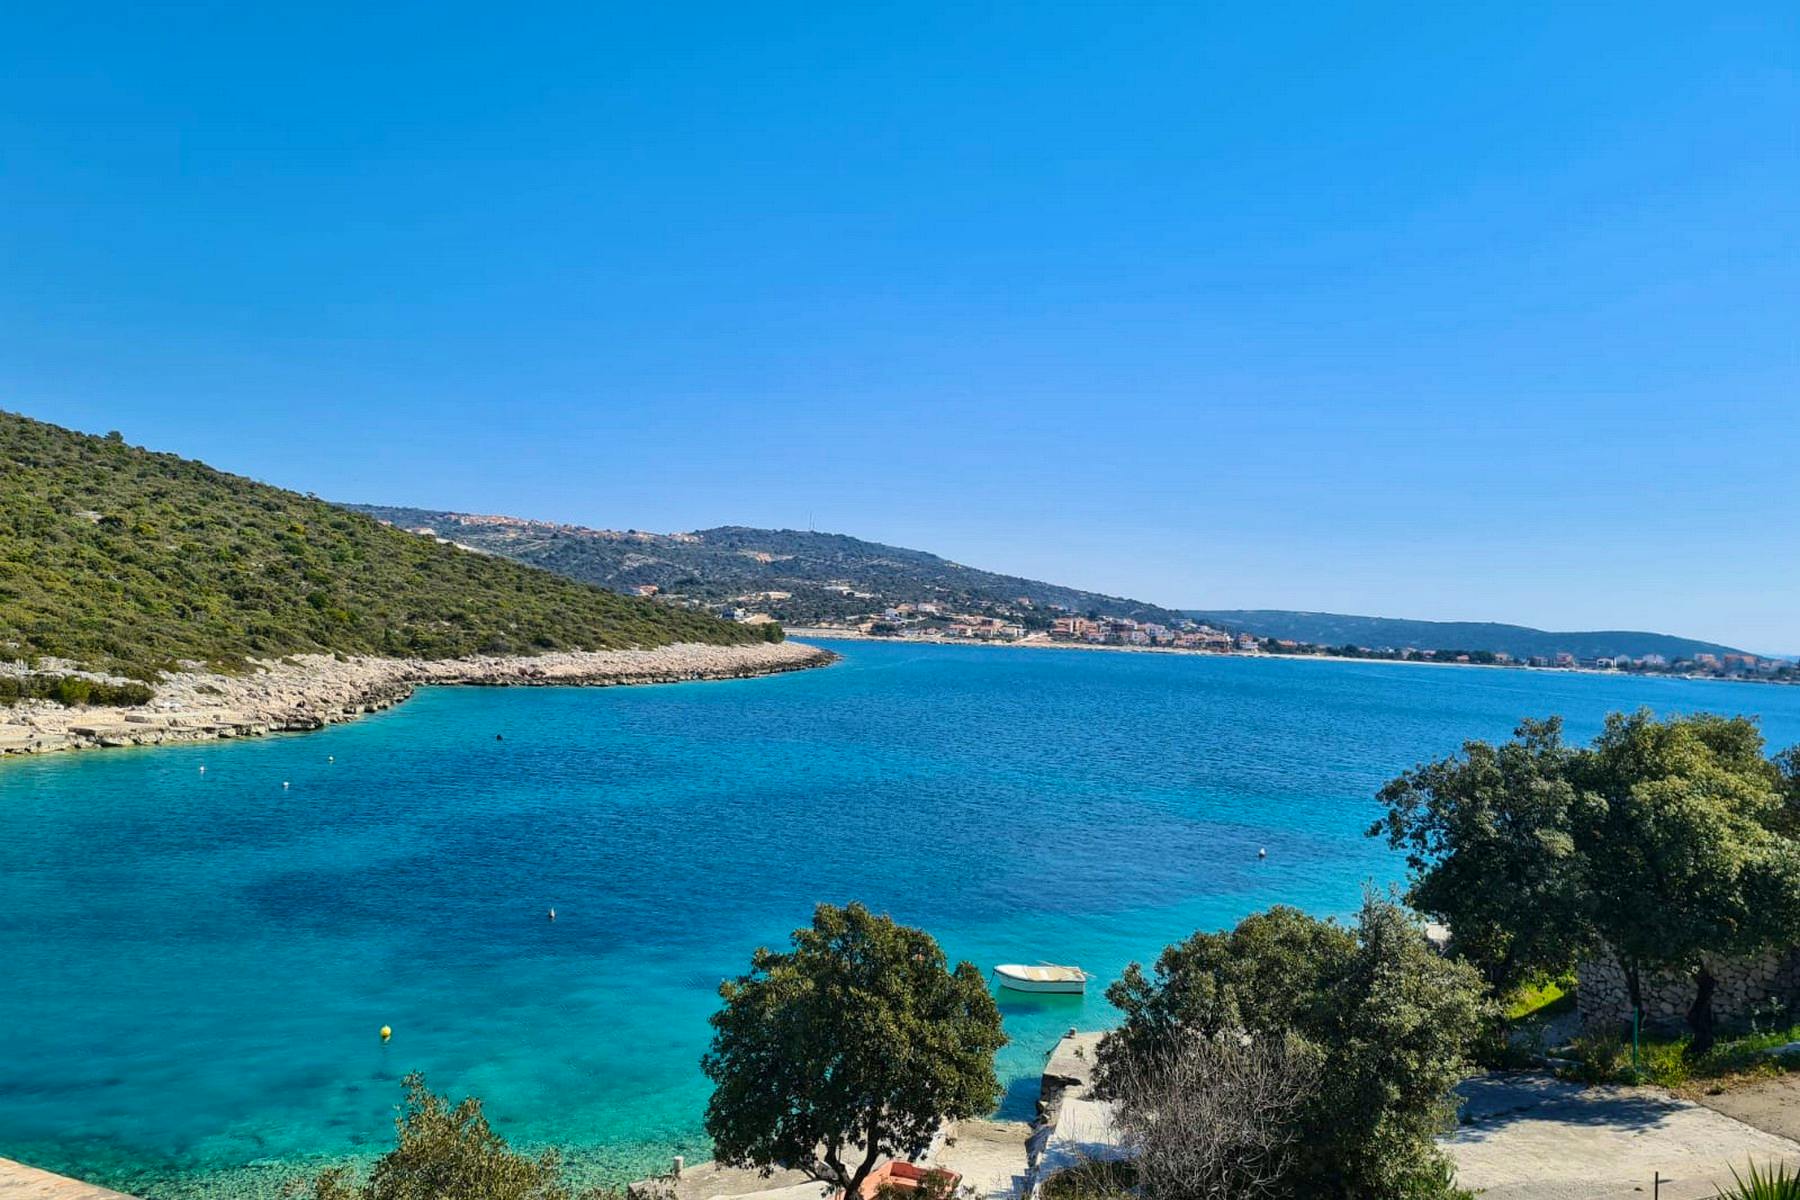 Scenic sea view from the villa